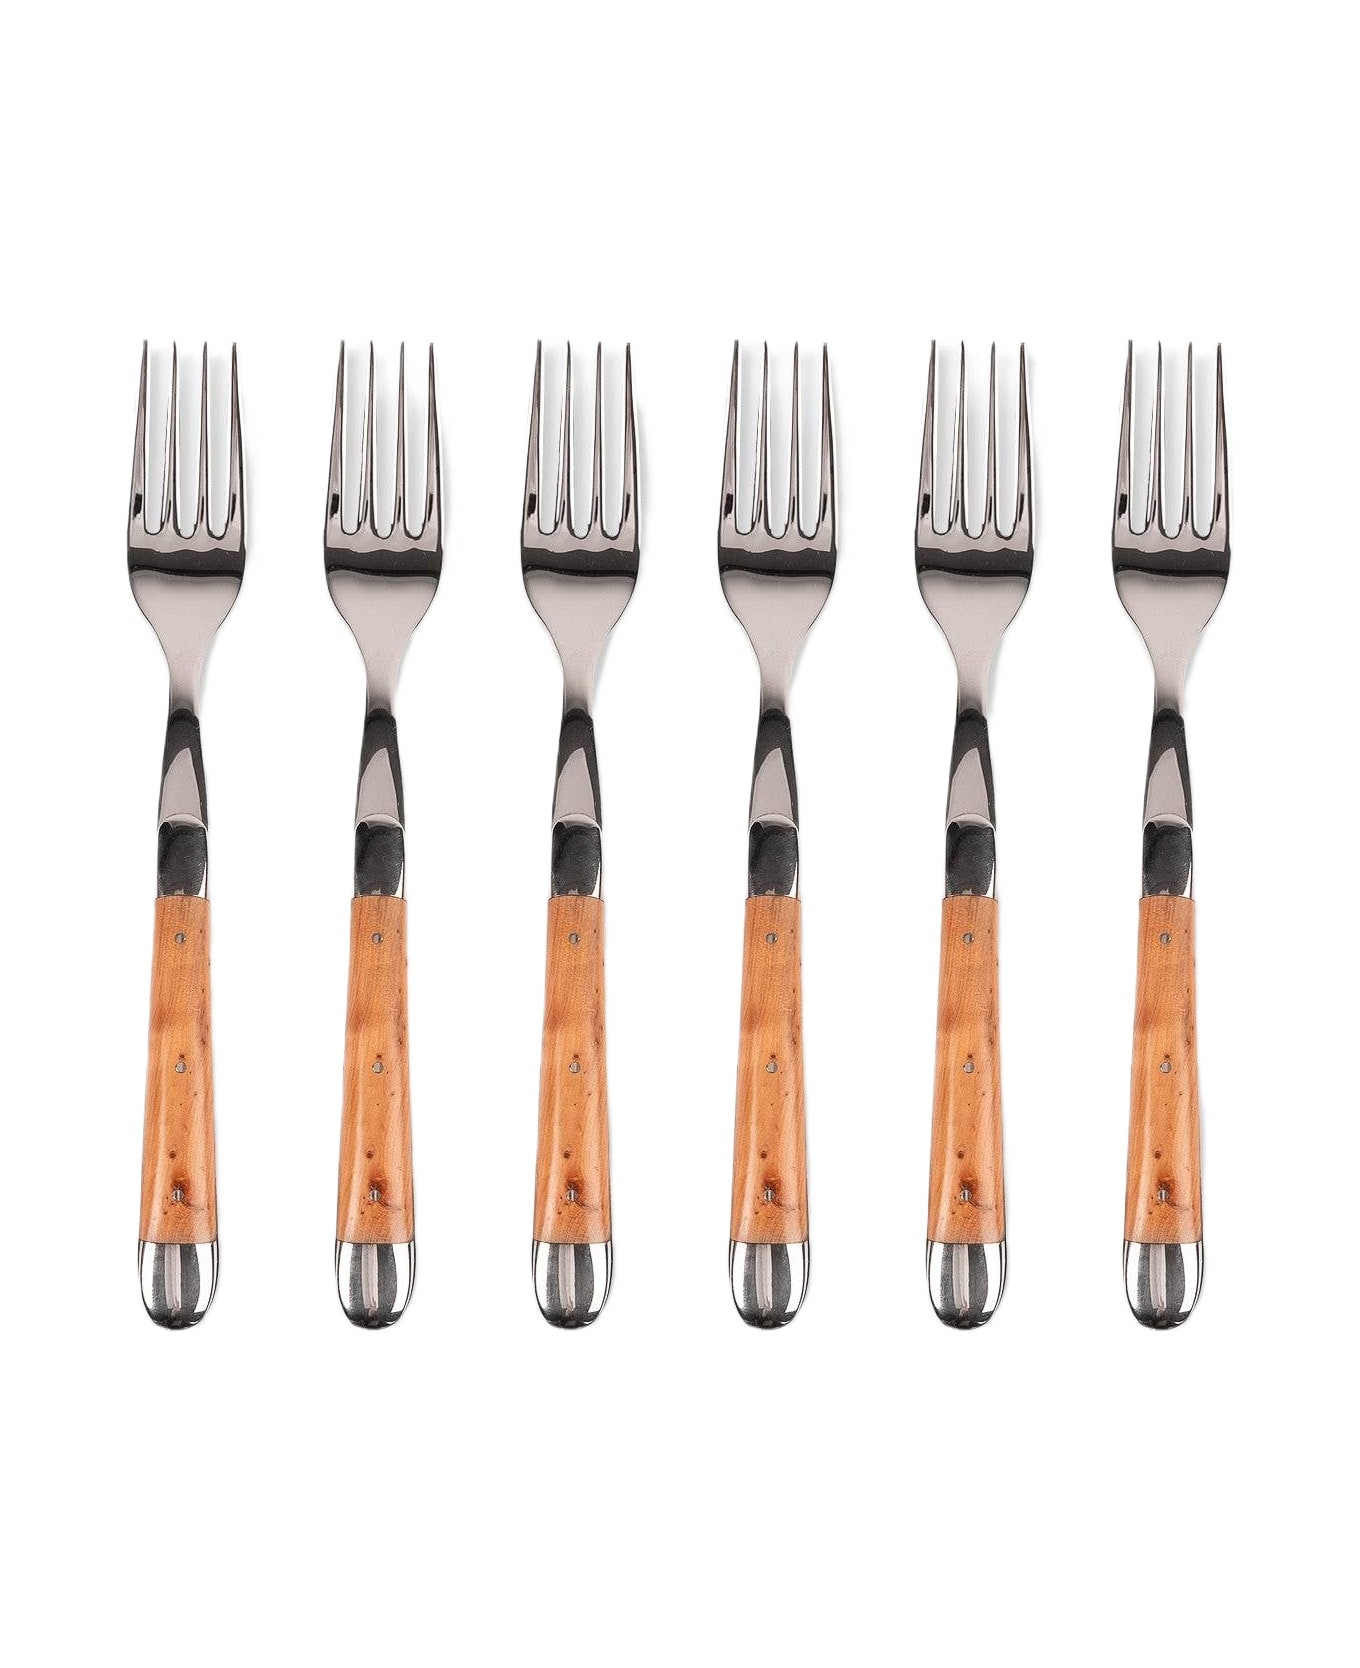 Larusmiani Table Forks  - Brown カトラリー